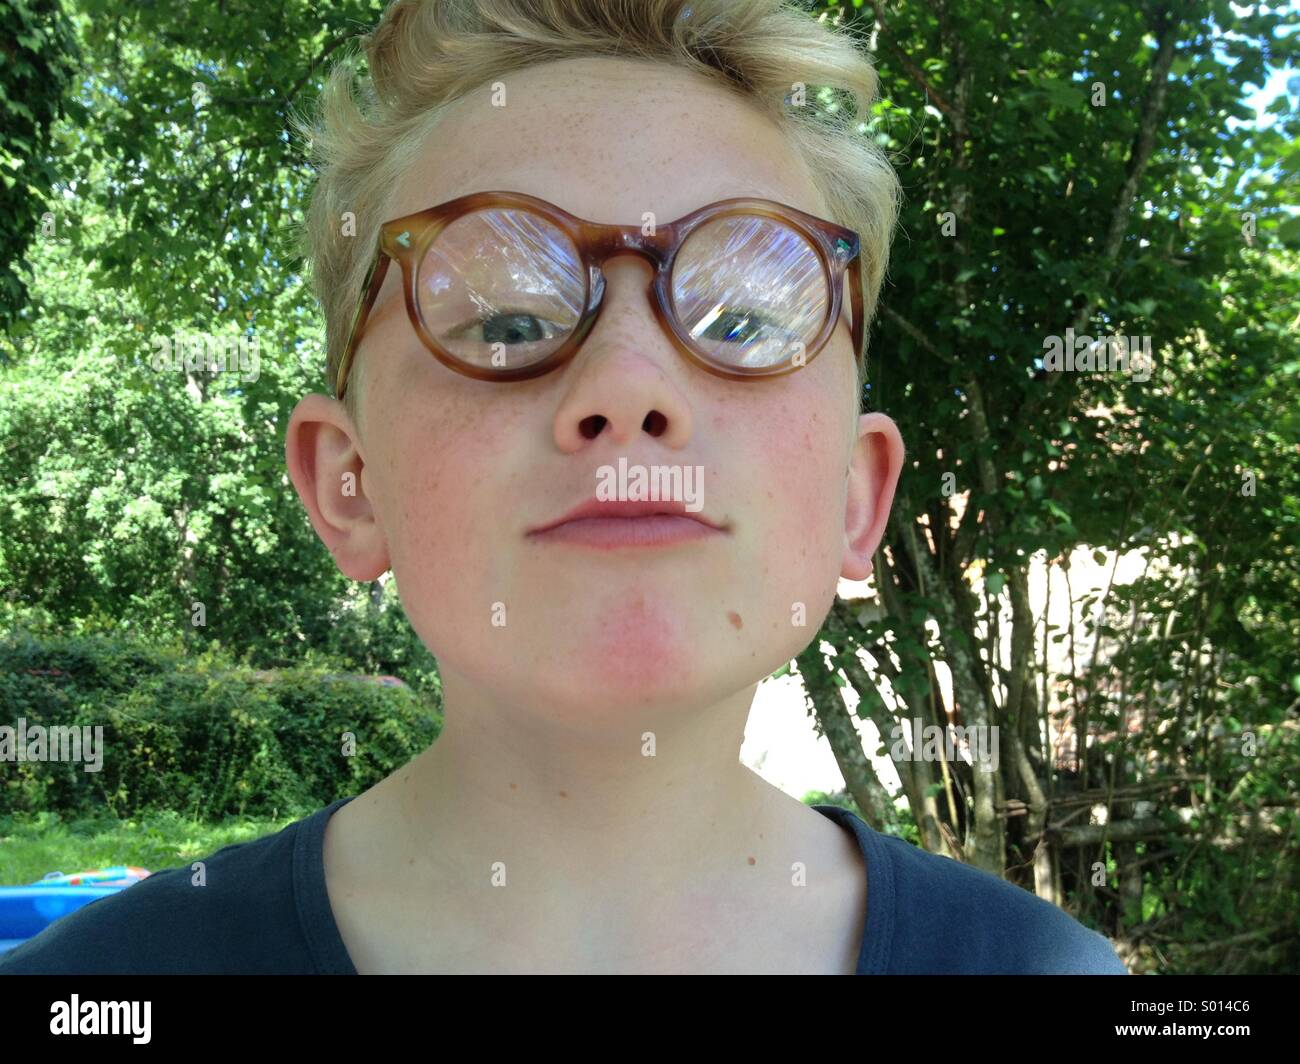 Jeune garçon avec de grandes lunettes rondes, dans un jardin Banque D'Images